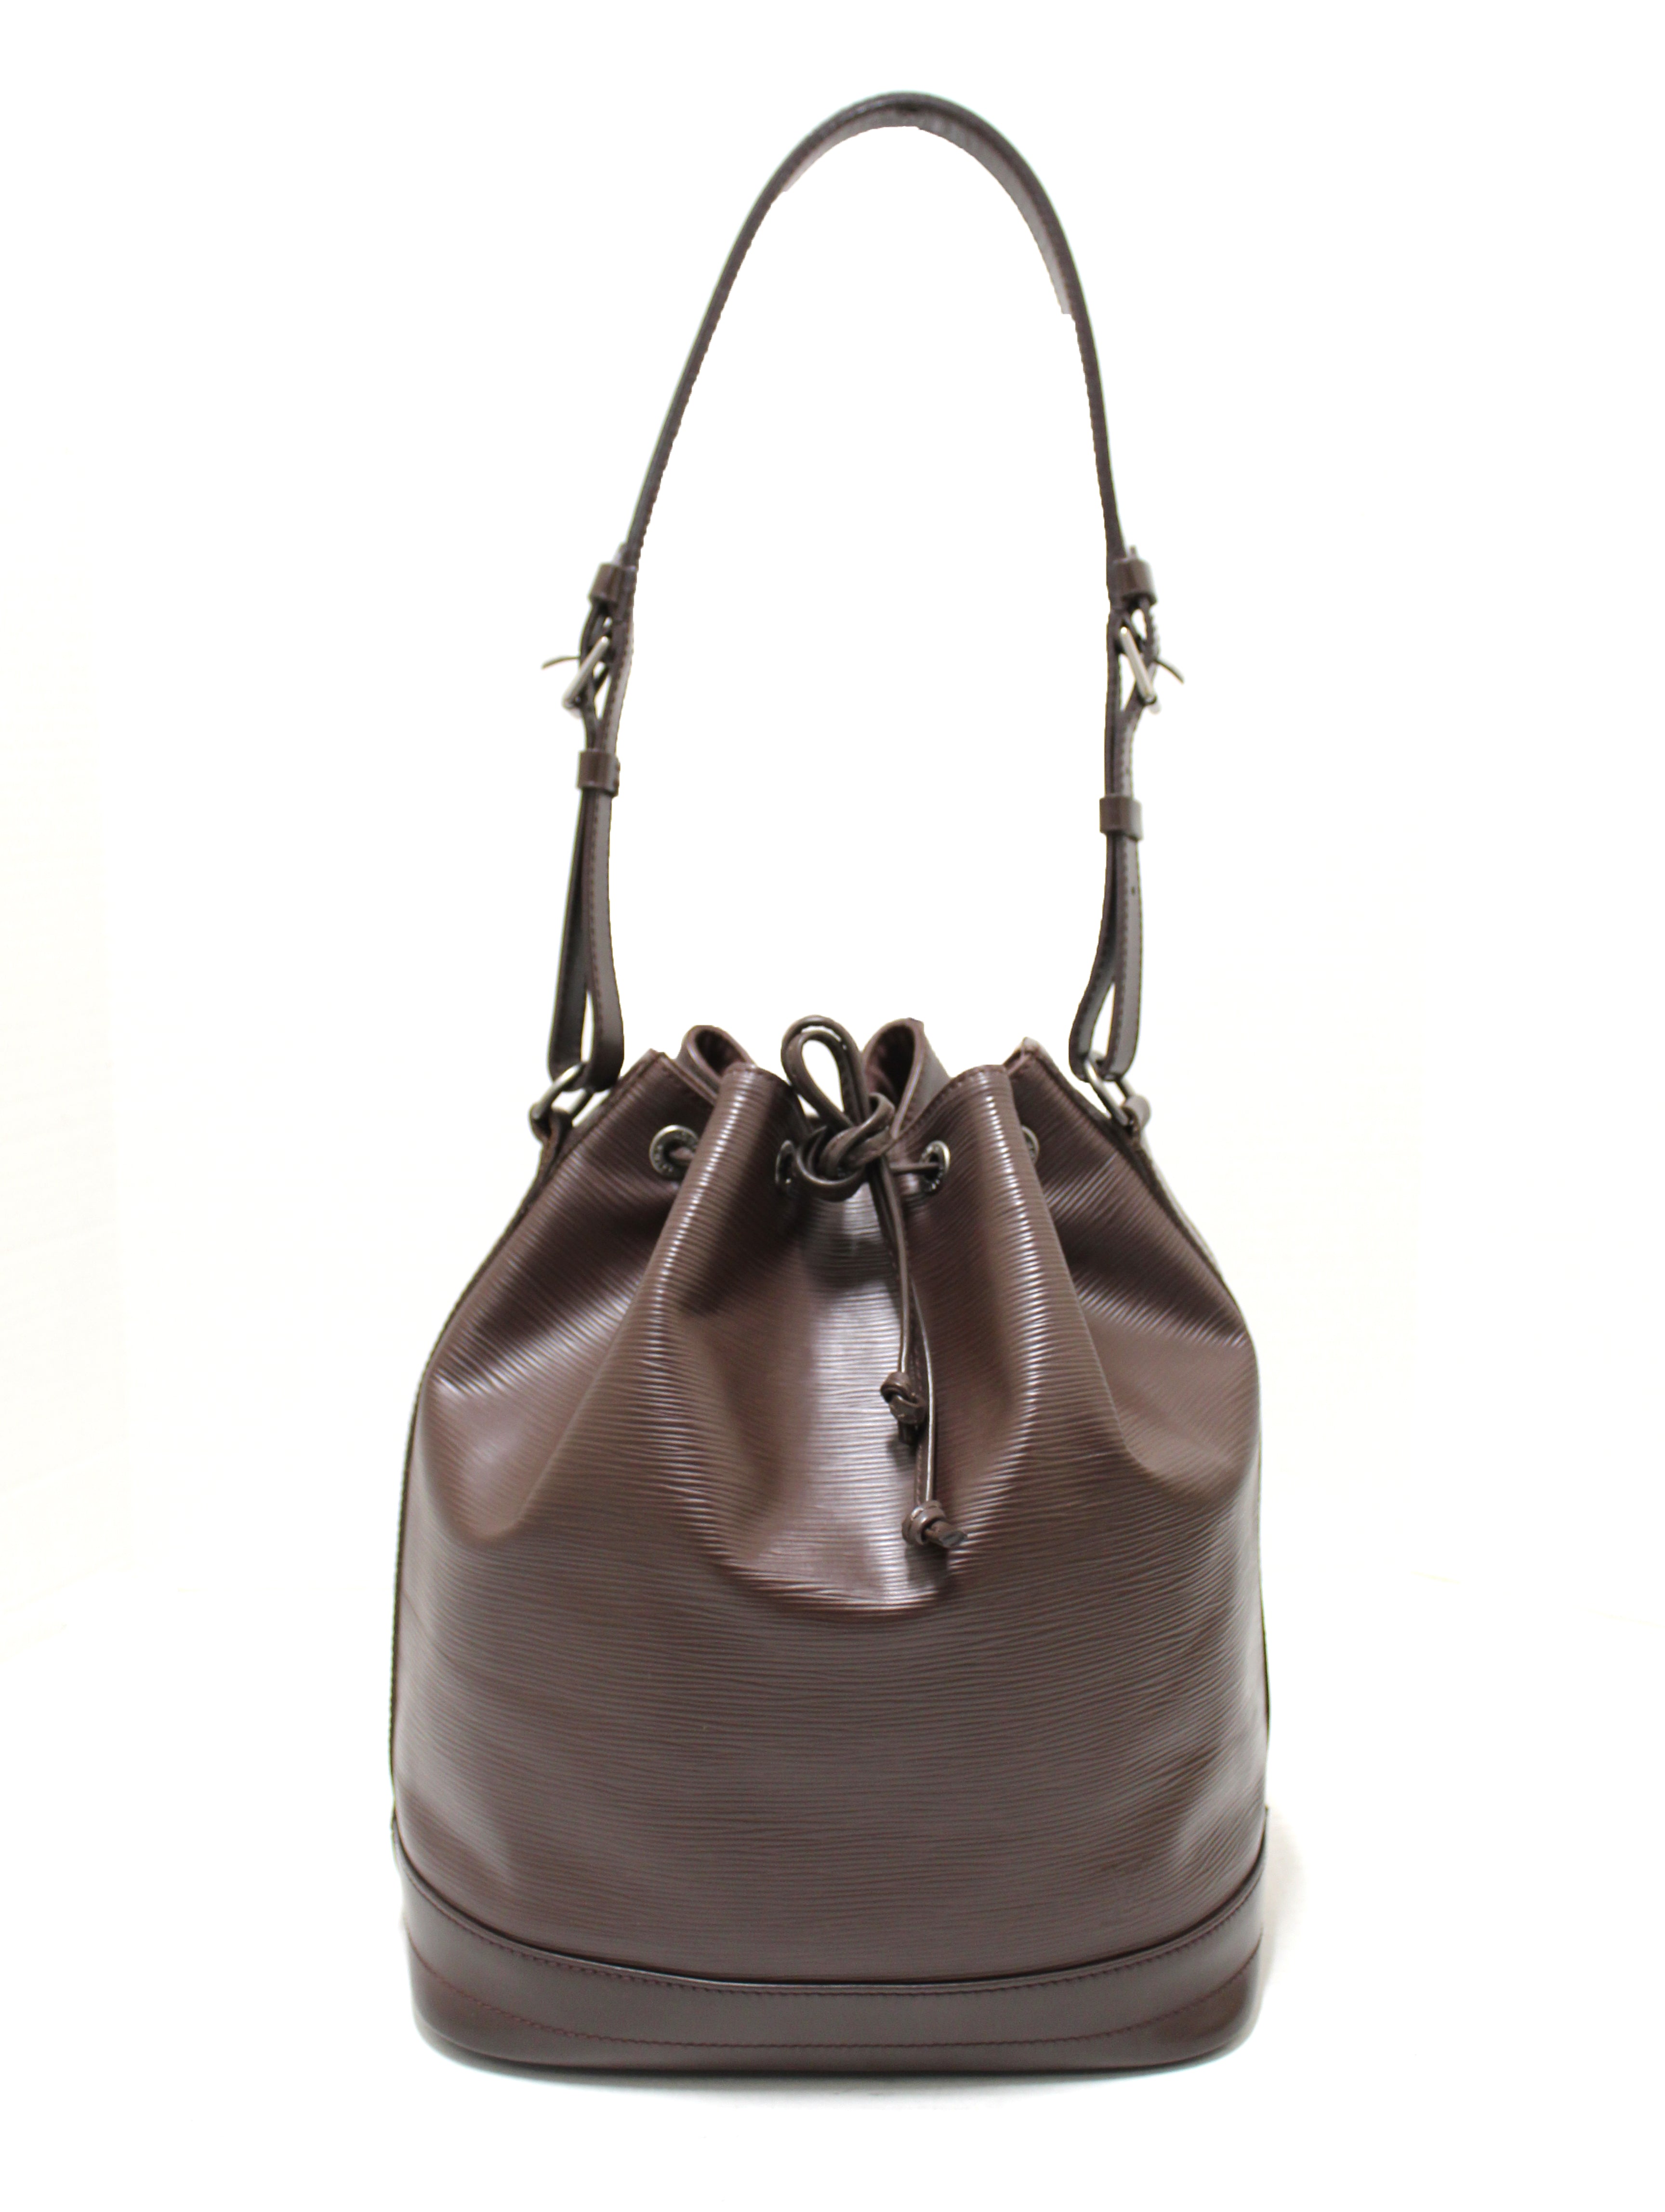 Authentic Louis Vuitton Epi Brown Leather Large Noe Shoulder Bag